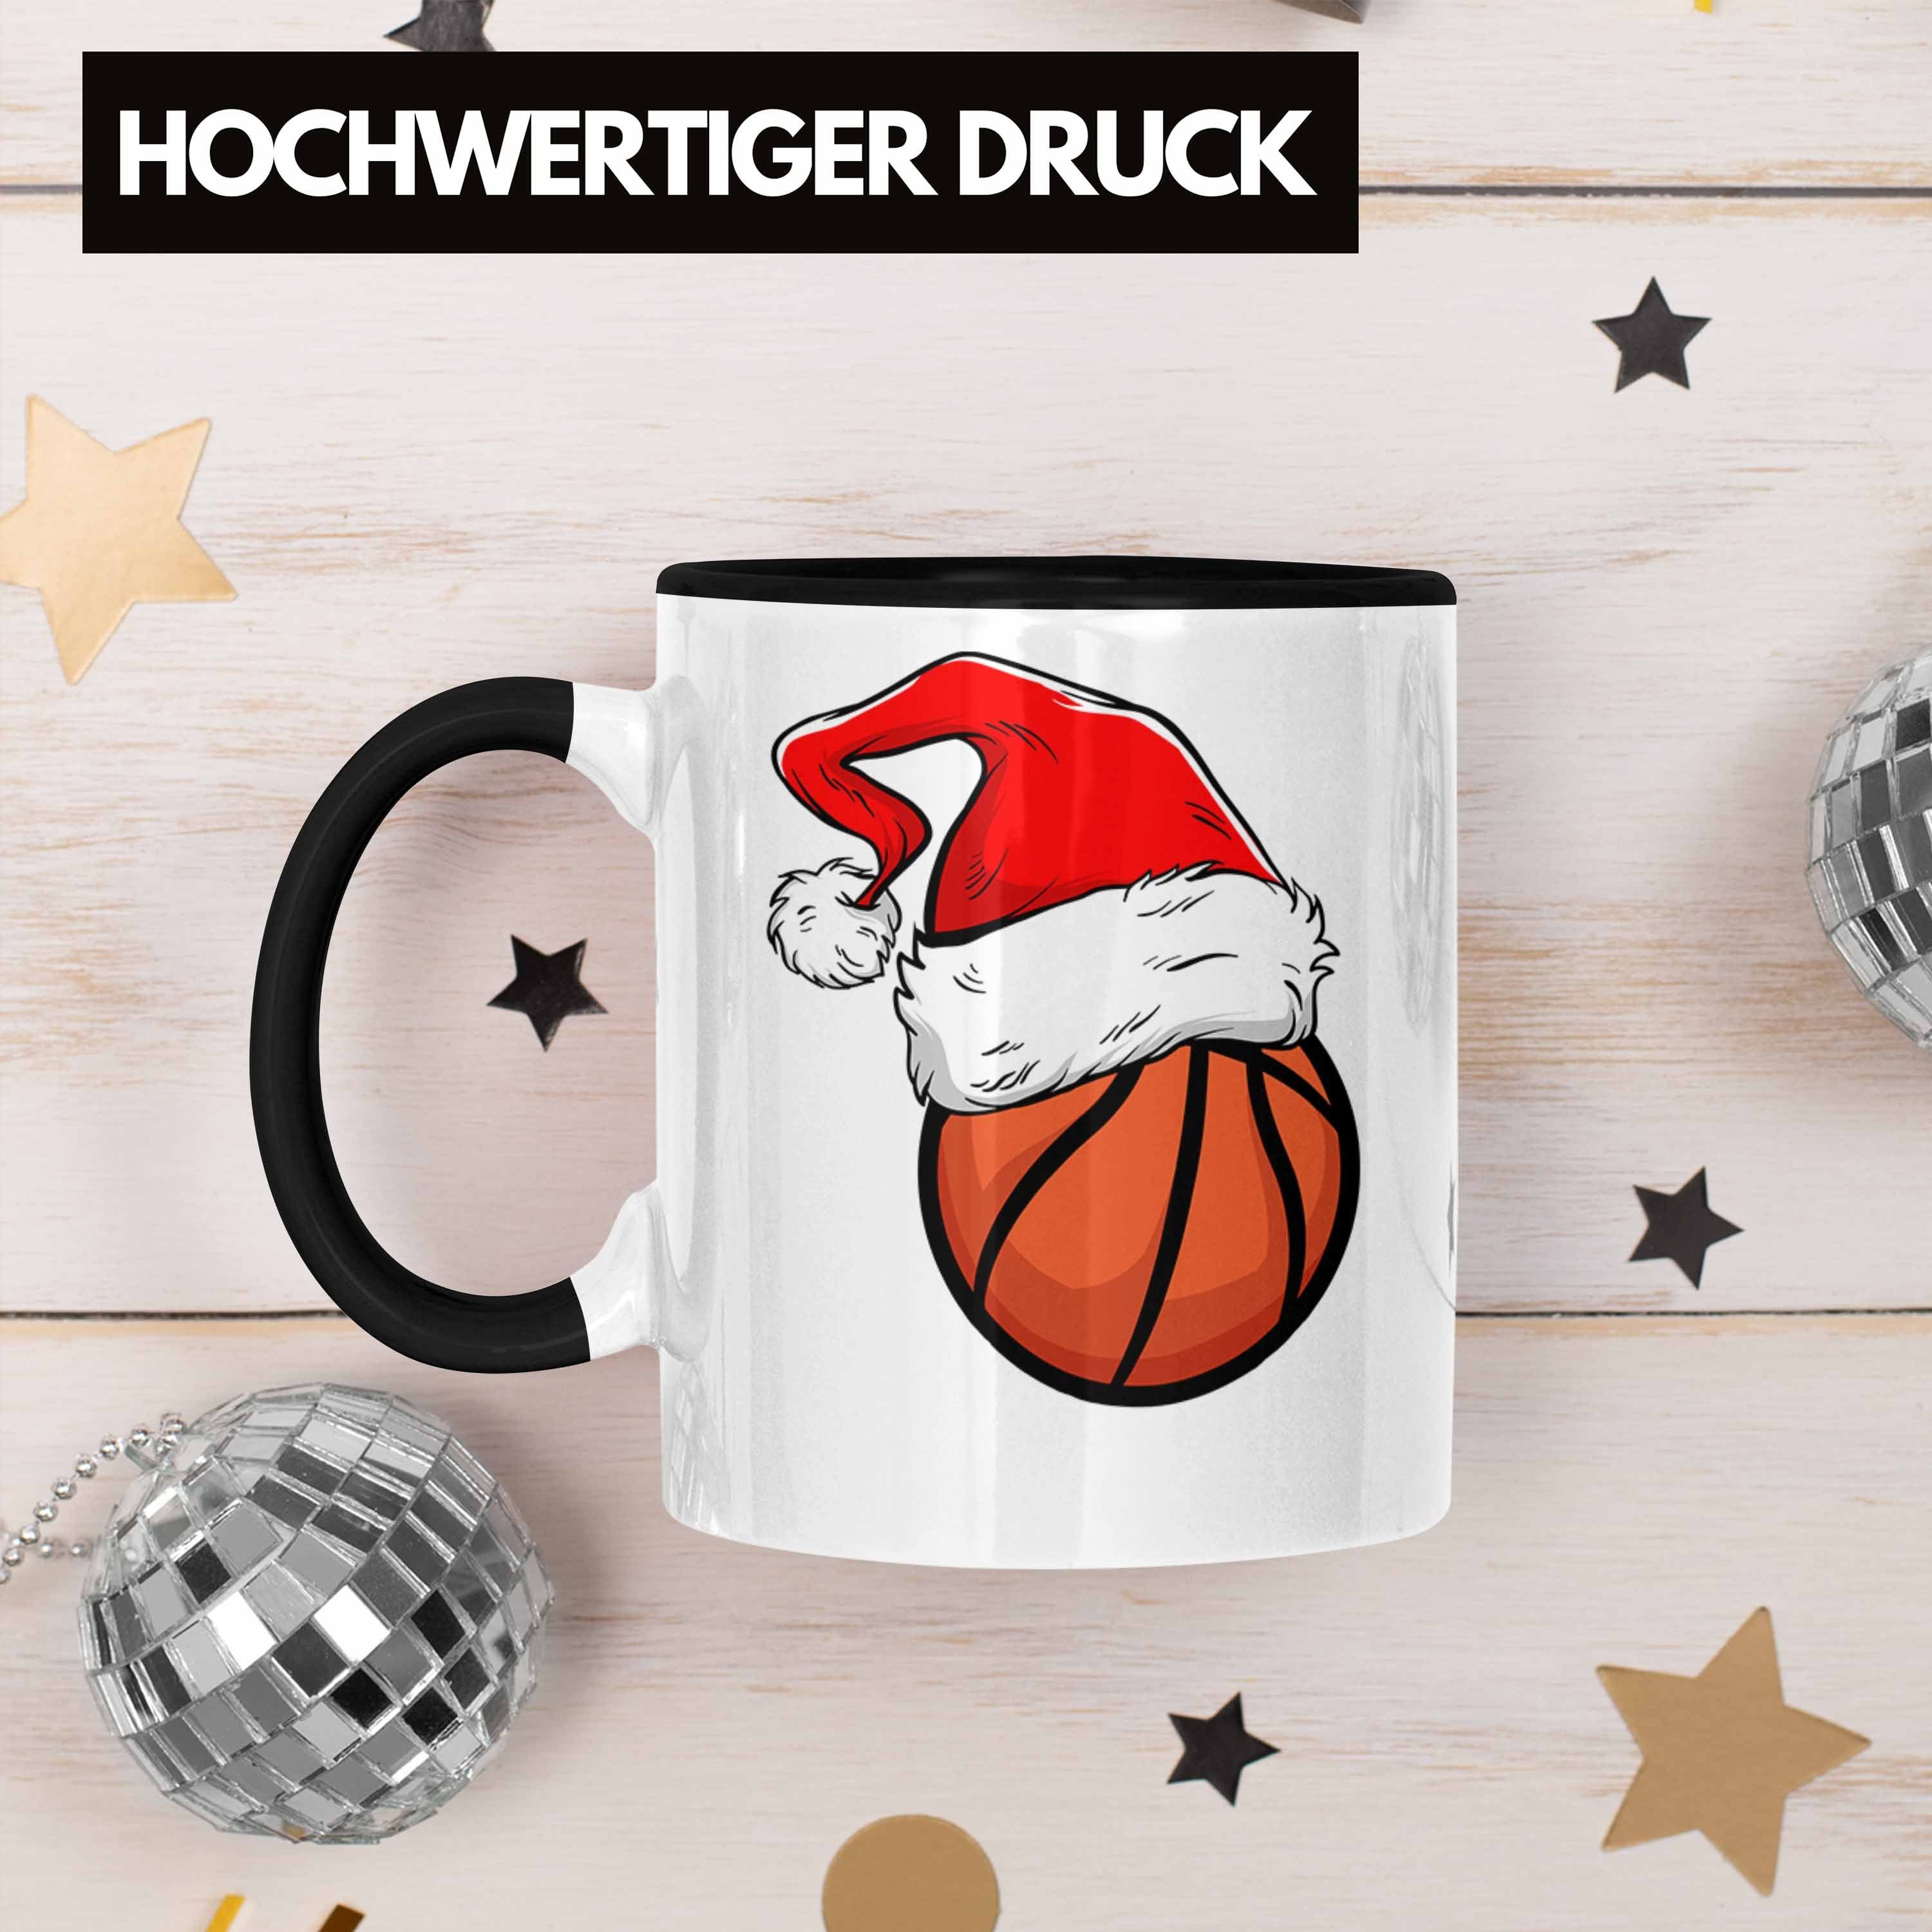 Geschenk - Tasse Basketball Trendation Weihnachten Trendation Schwarz Tasse Geschenkidee Basketballspieler